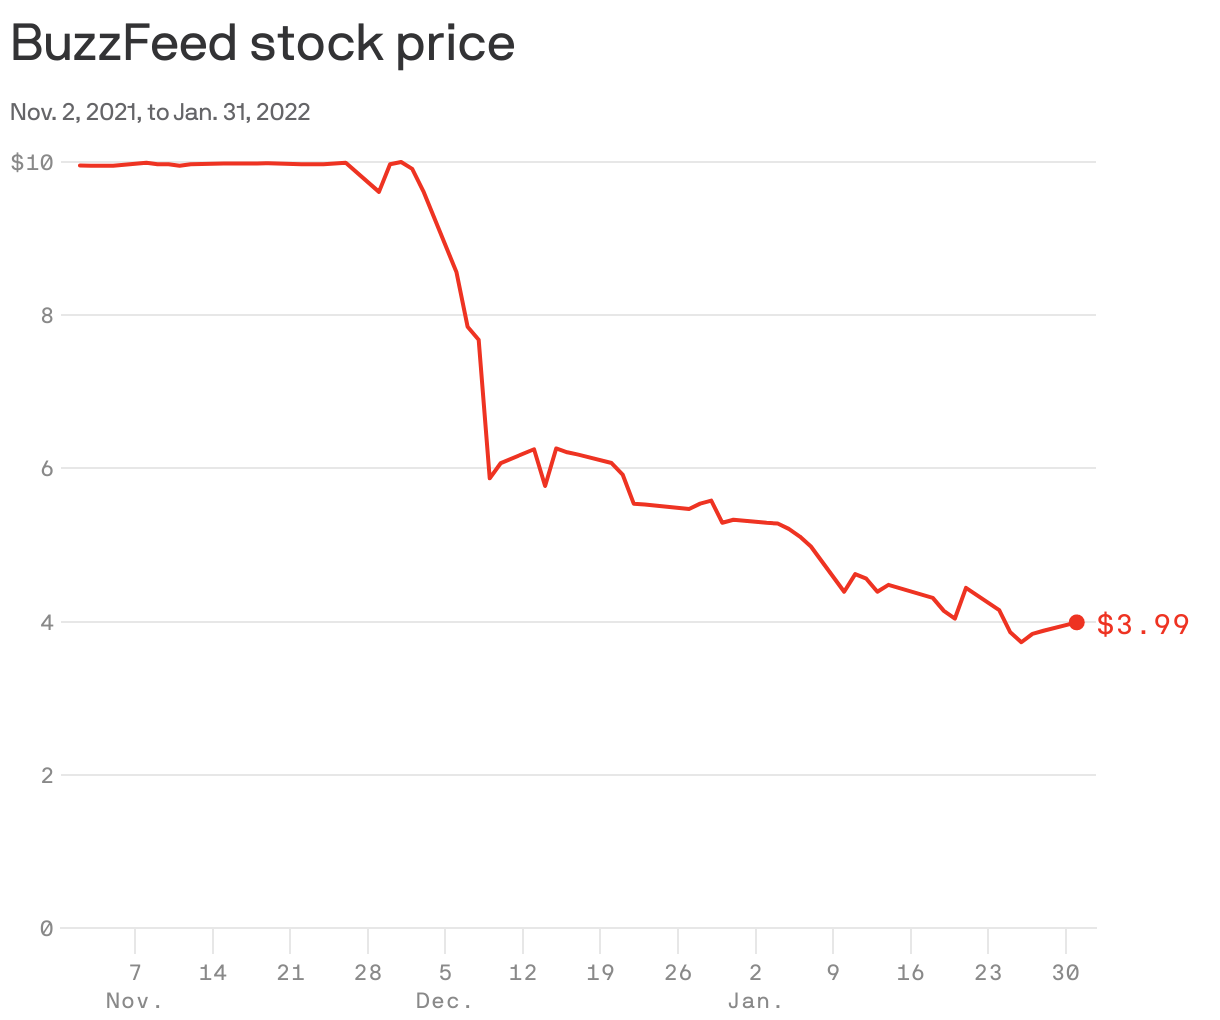 BuzzFeed stock price